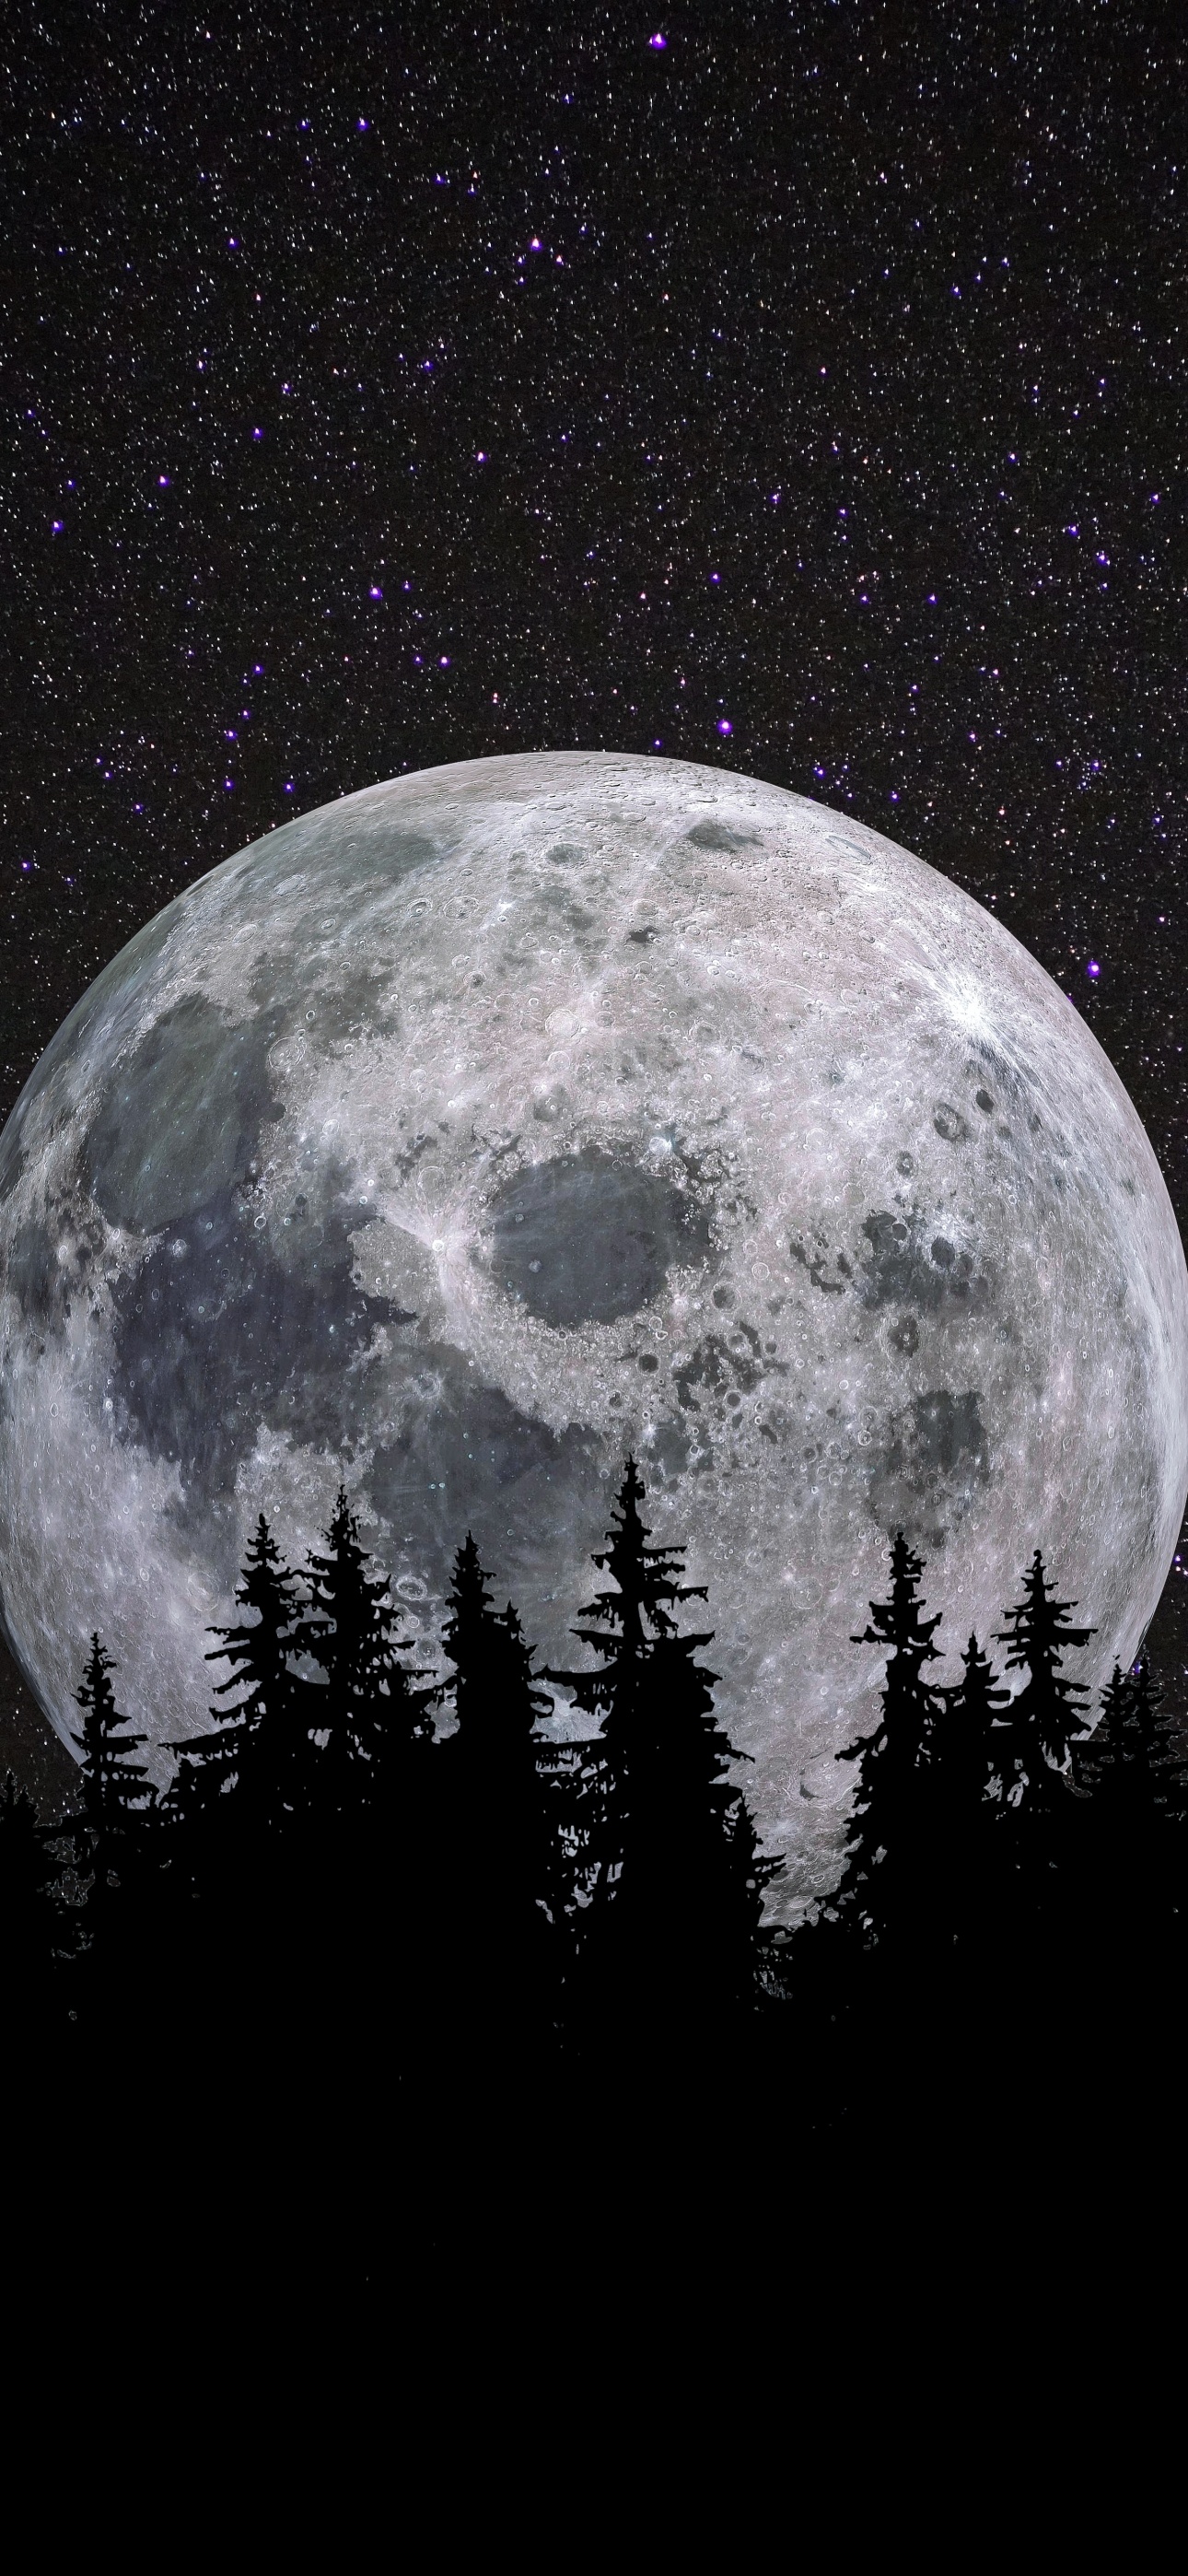 Cùng chiêm ngưỡng tuyệt phẩm của thiên nhiên với hình ảnh trăng tròn toả sáng trên bầu trời đêm. Mỗi lần đêm trăng xuất hiện, không khí trở nên thật ấm áp và nhuần nhuyễn. Điều đó sẽ không thể chối đối khi bạn thấy được hình ảnh trăng tròn đẹp như tranh vẽ này. 